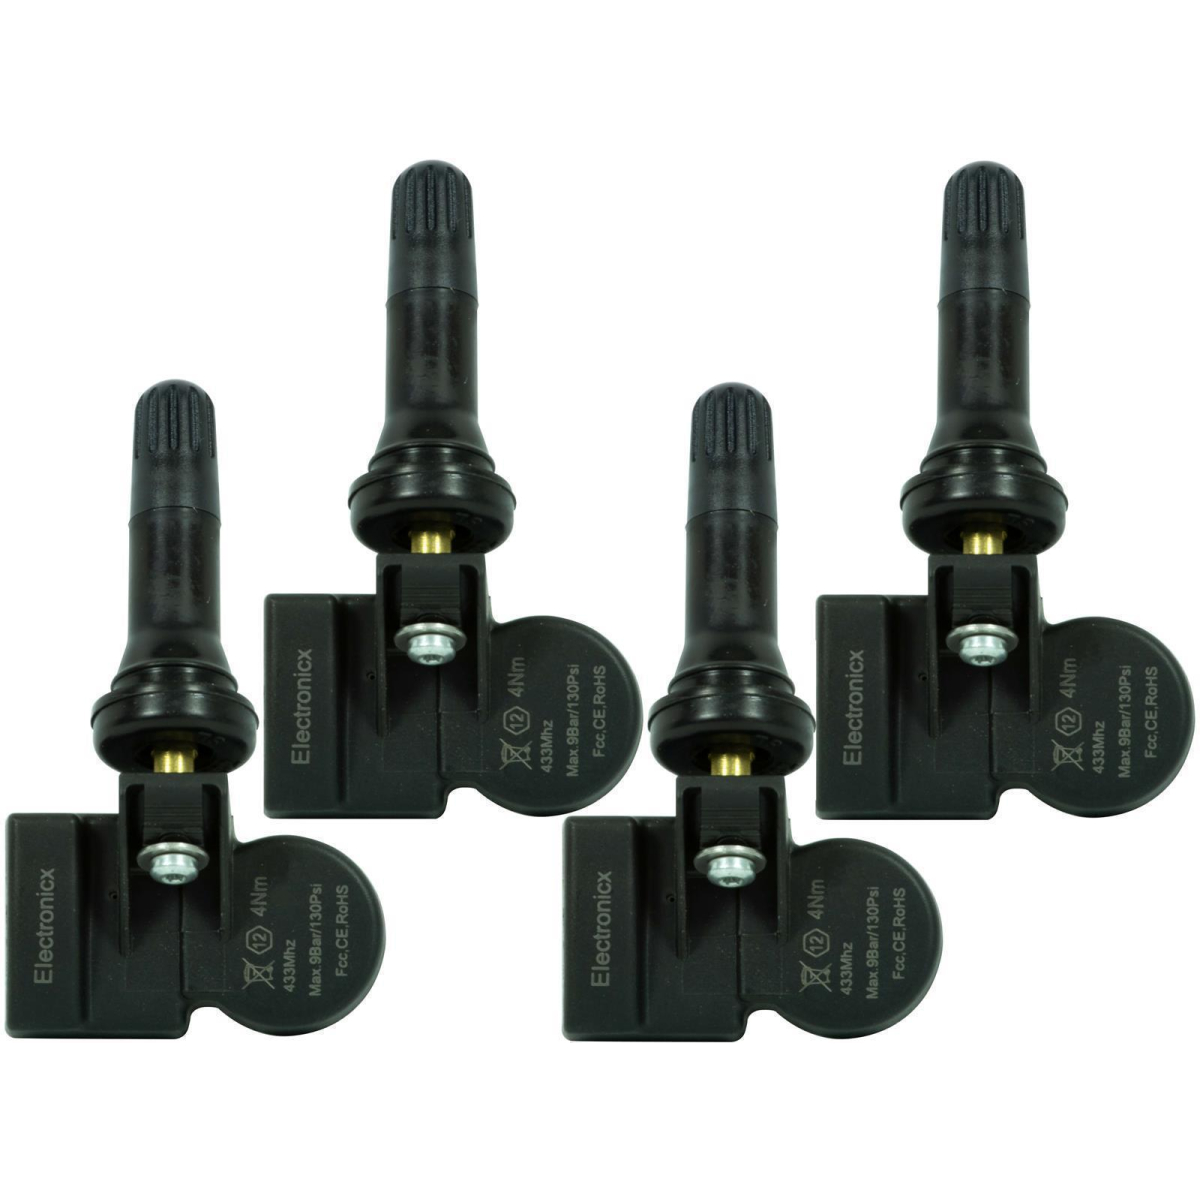 4 tire pressure sensors rdks sensors rubber valve for Ford Flex 01.2013-12.2019